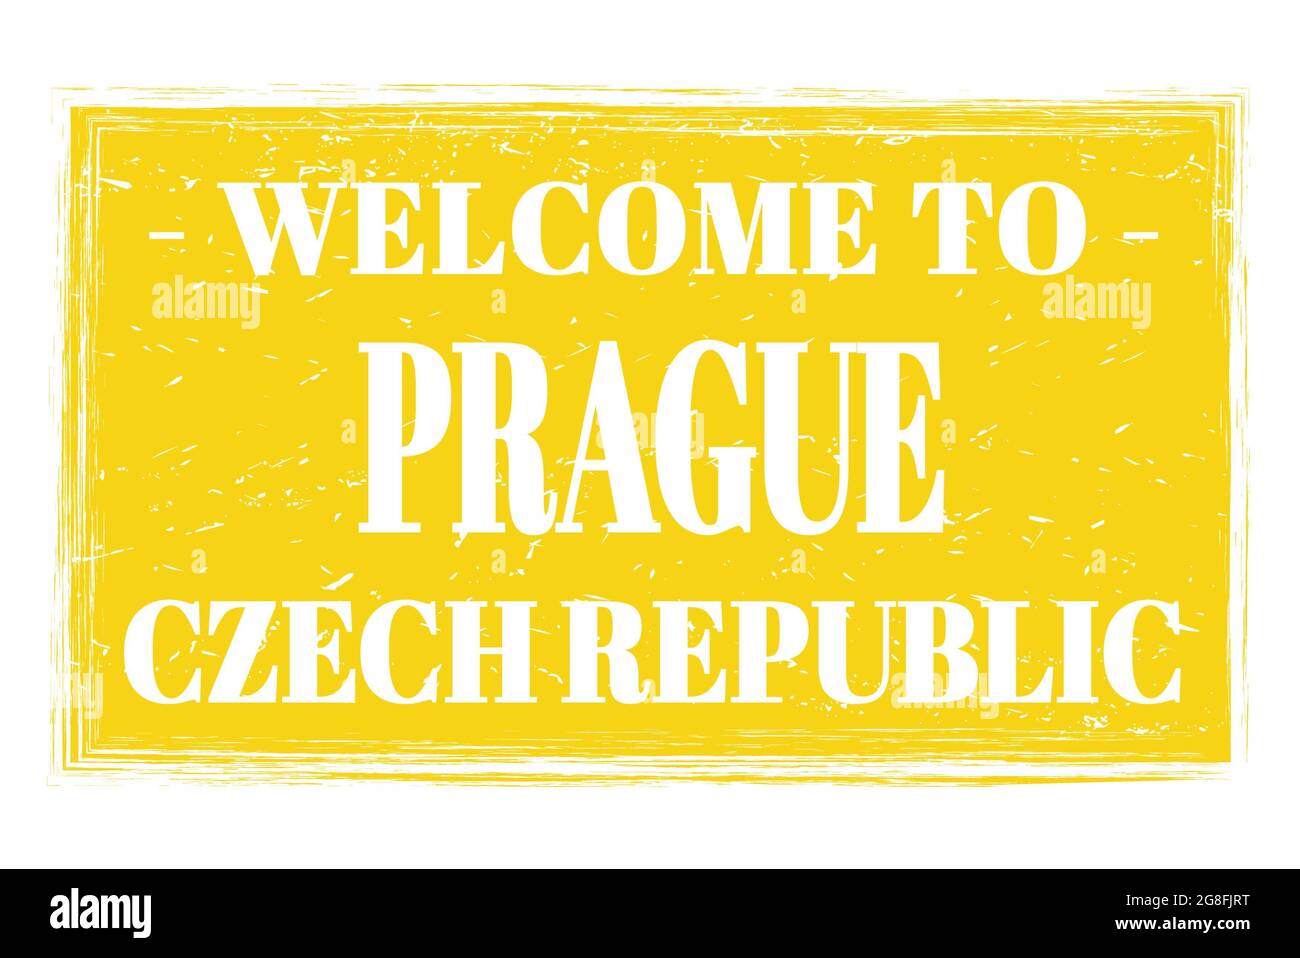 BIENVENUE À PRAGUE - RÉPUBLIQUE TCHÈQUE, mots écrits sur le cachet de poste rectangle jaune Banque D'Images